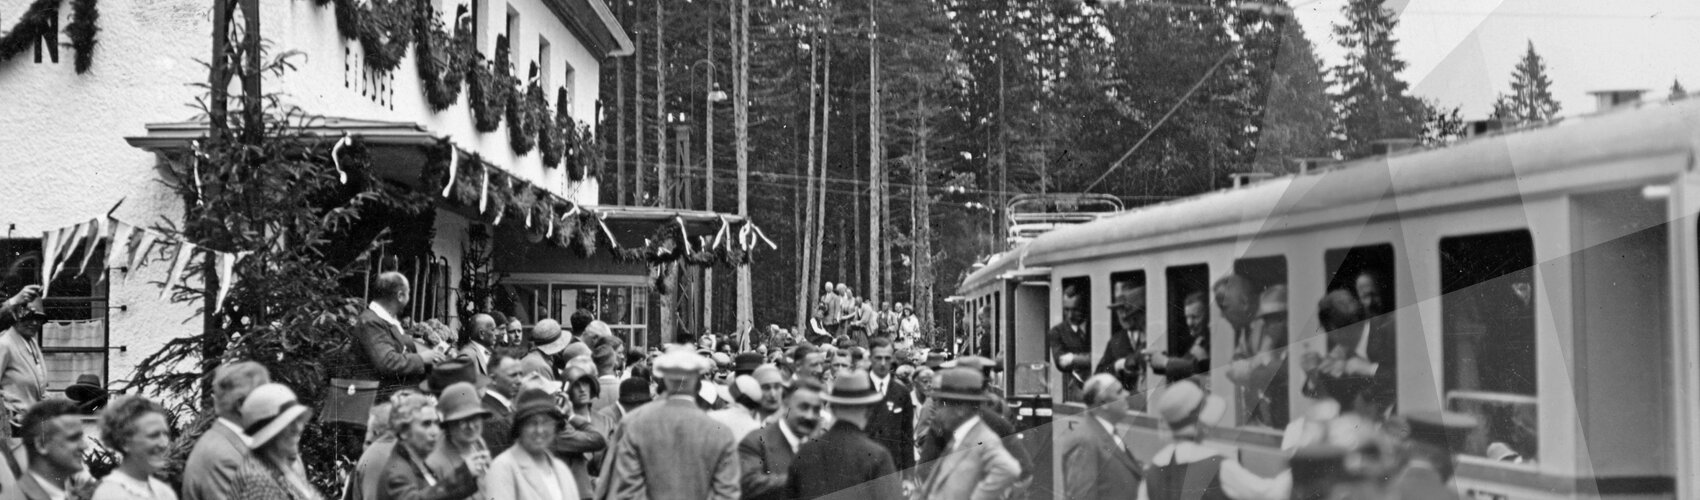 Bahnhof Eibsee | Streckeneröffnung 1930 | © Bayerische Zugspitzbahn Bergbahn AG